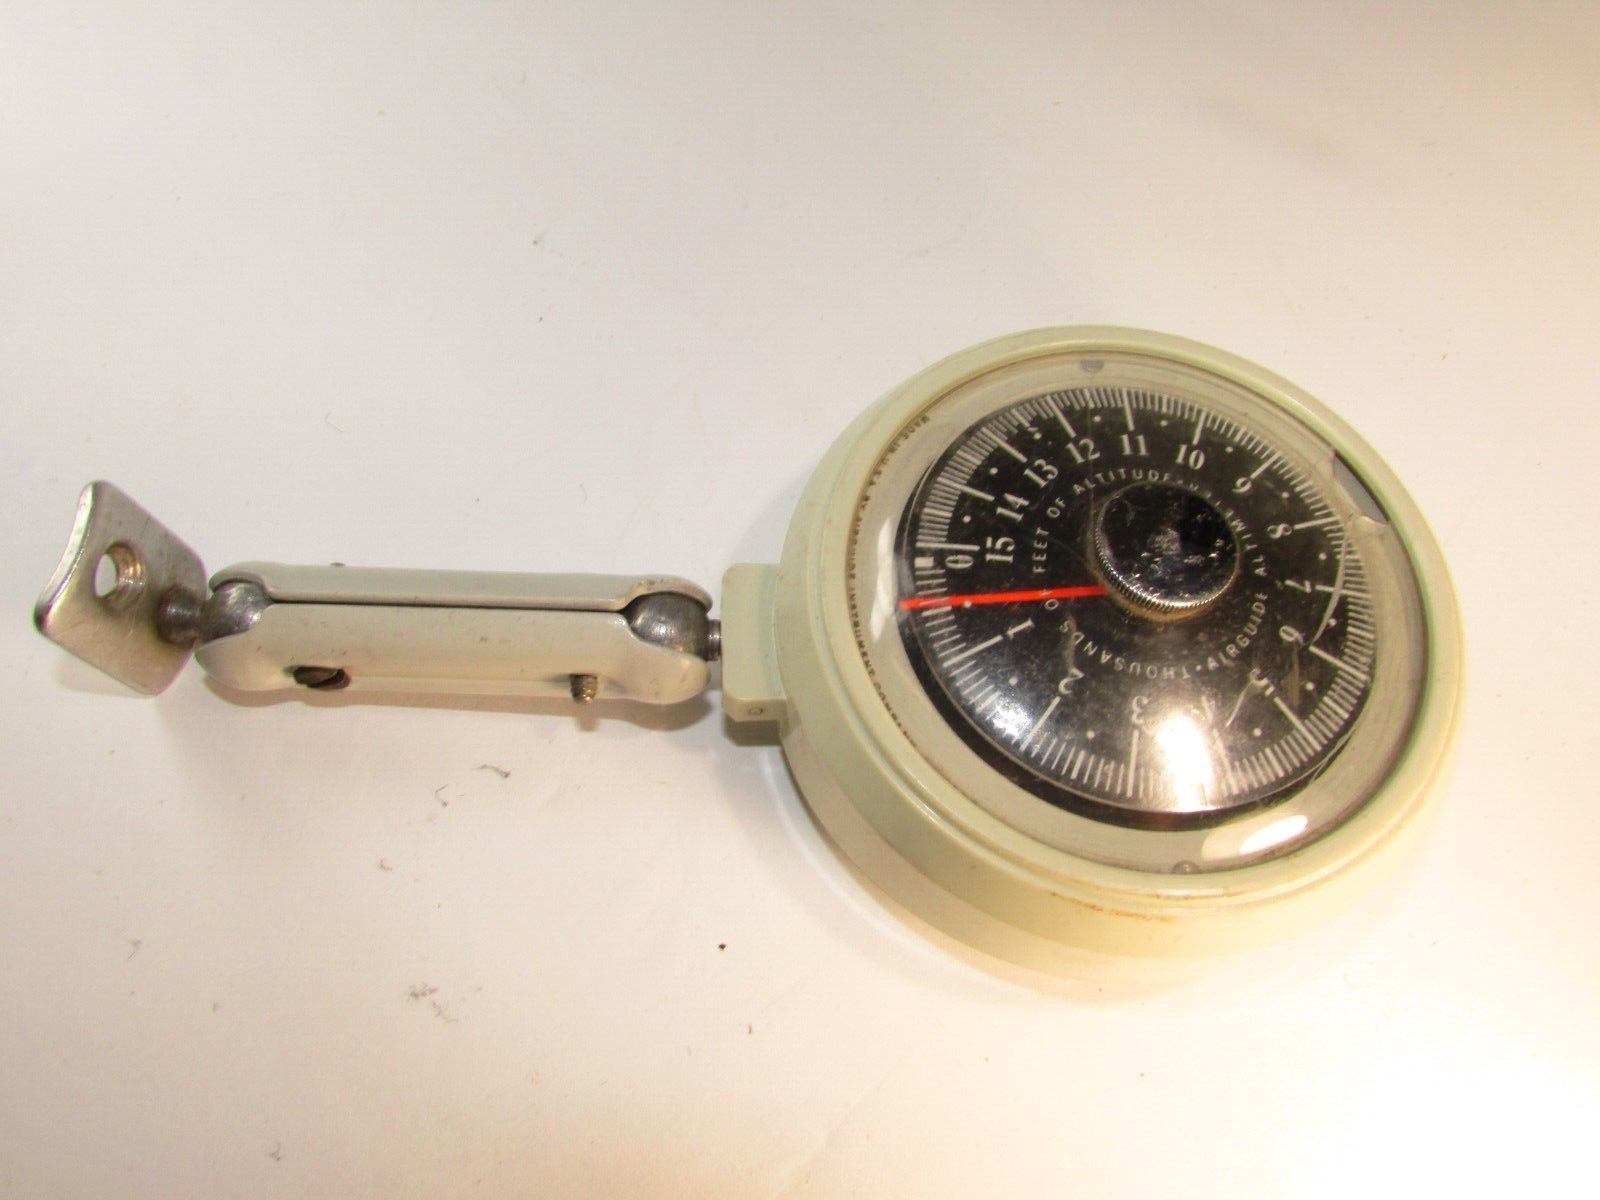 Vintage Airguide Altimeter Model 608 ~ Automotive 0-15000ft Gauge Indicator